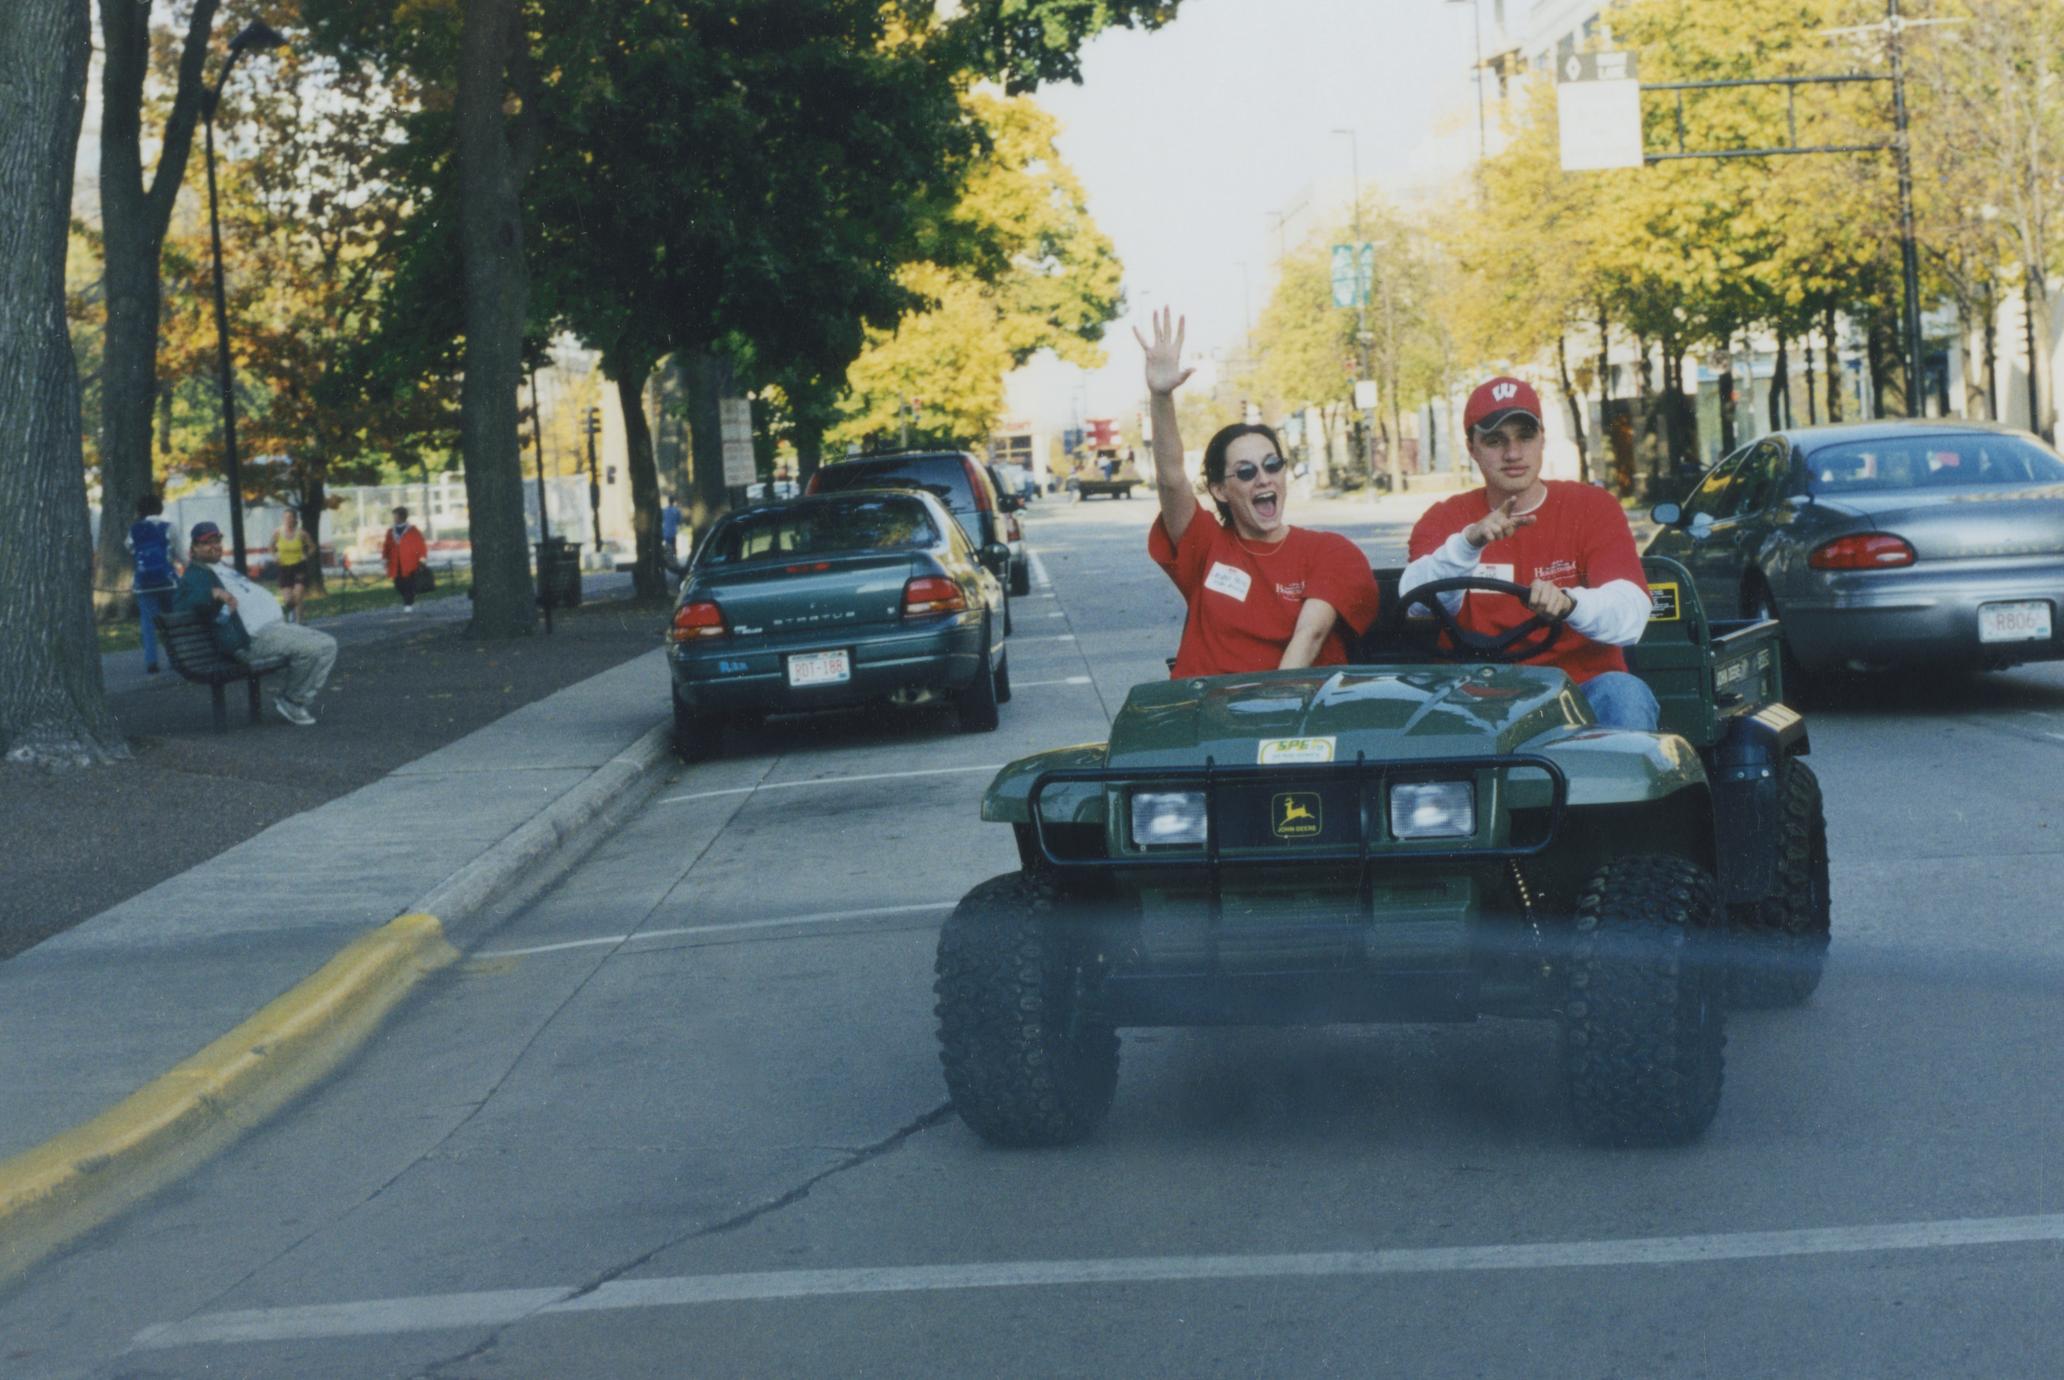 1999 homecoming parade (1 of 4)